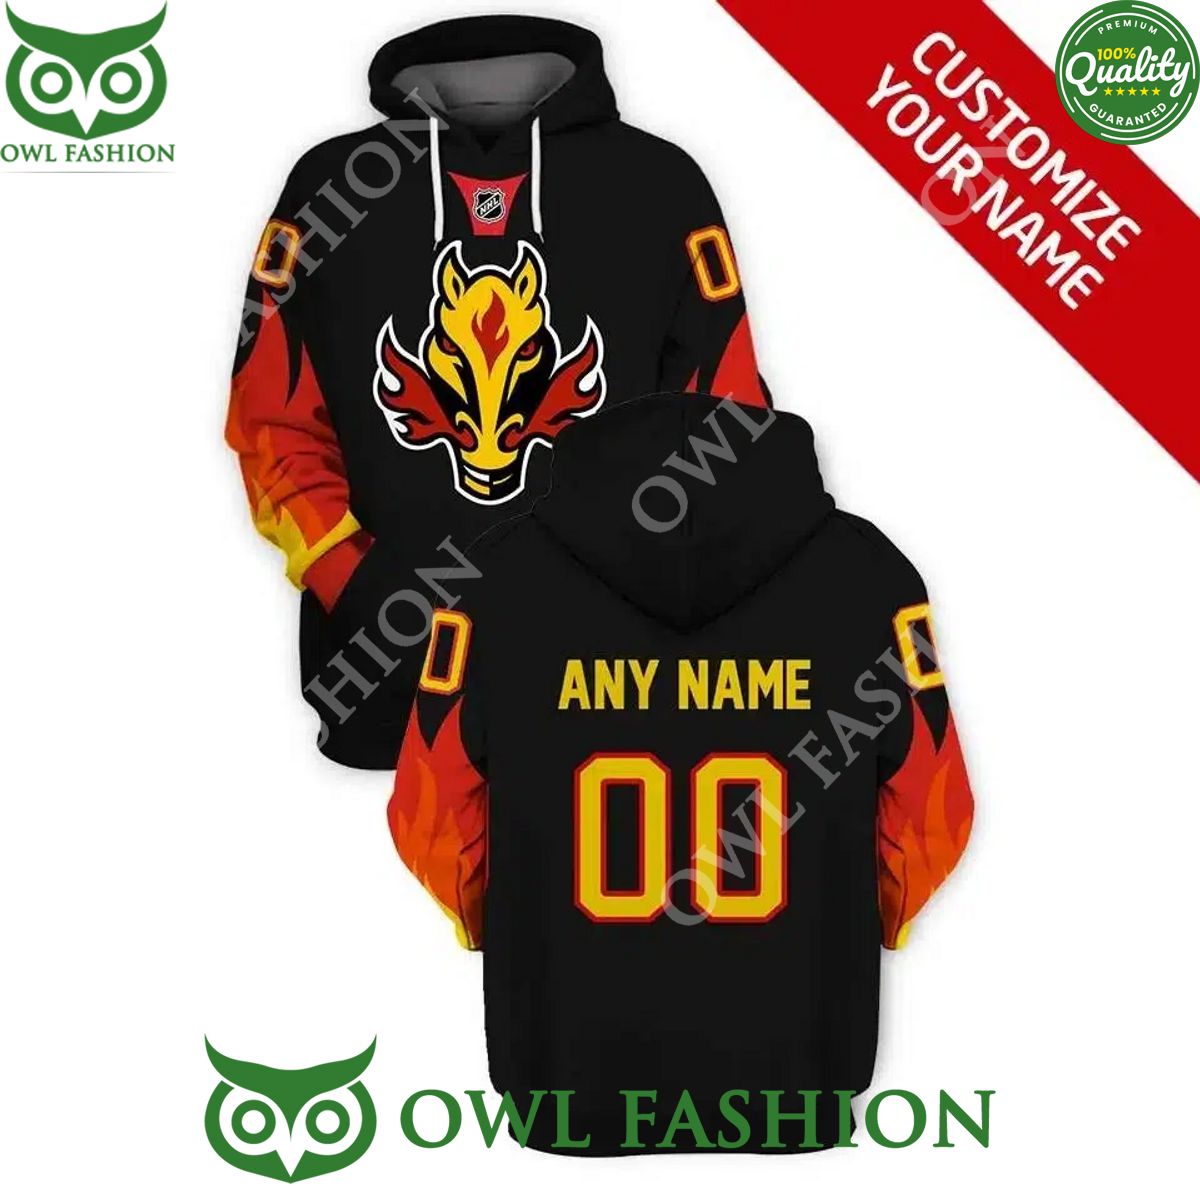 the calgary flames ice hockey team printed custom name and number hoodie 1 EhwNM.jpg